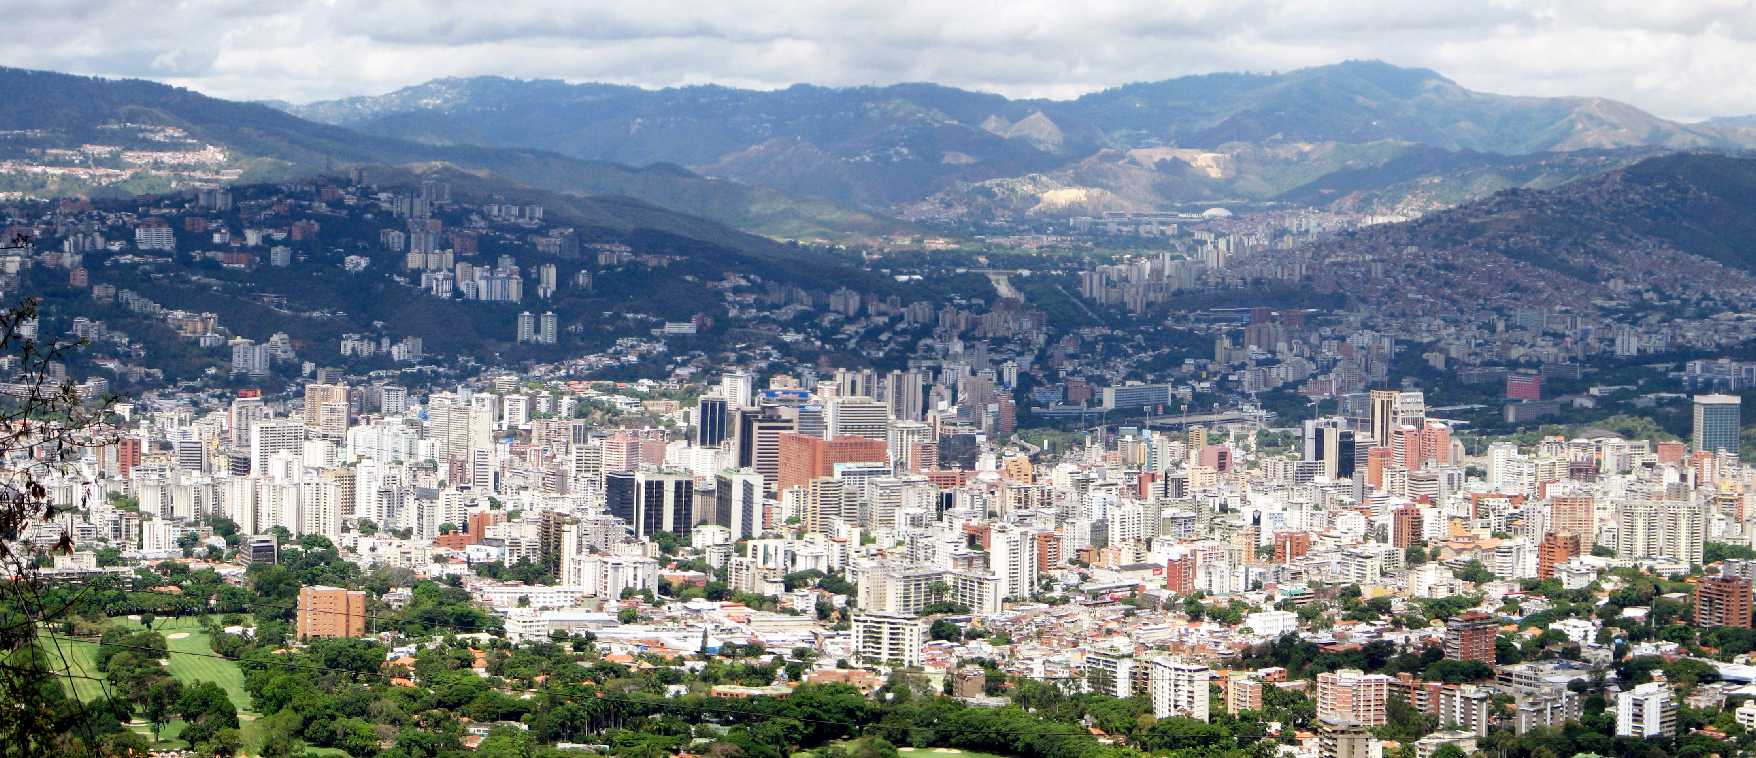 Elisa Silva propone integrar la ciudad planificada y los barrios